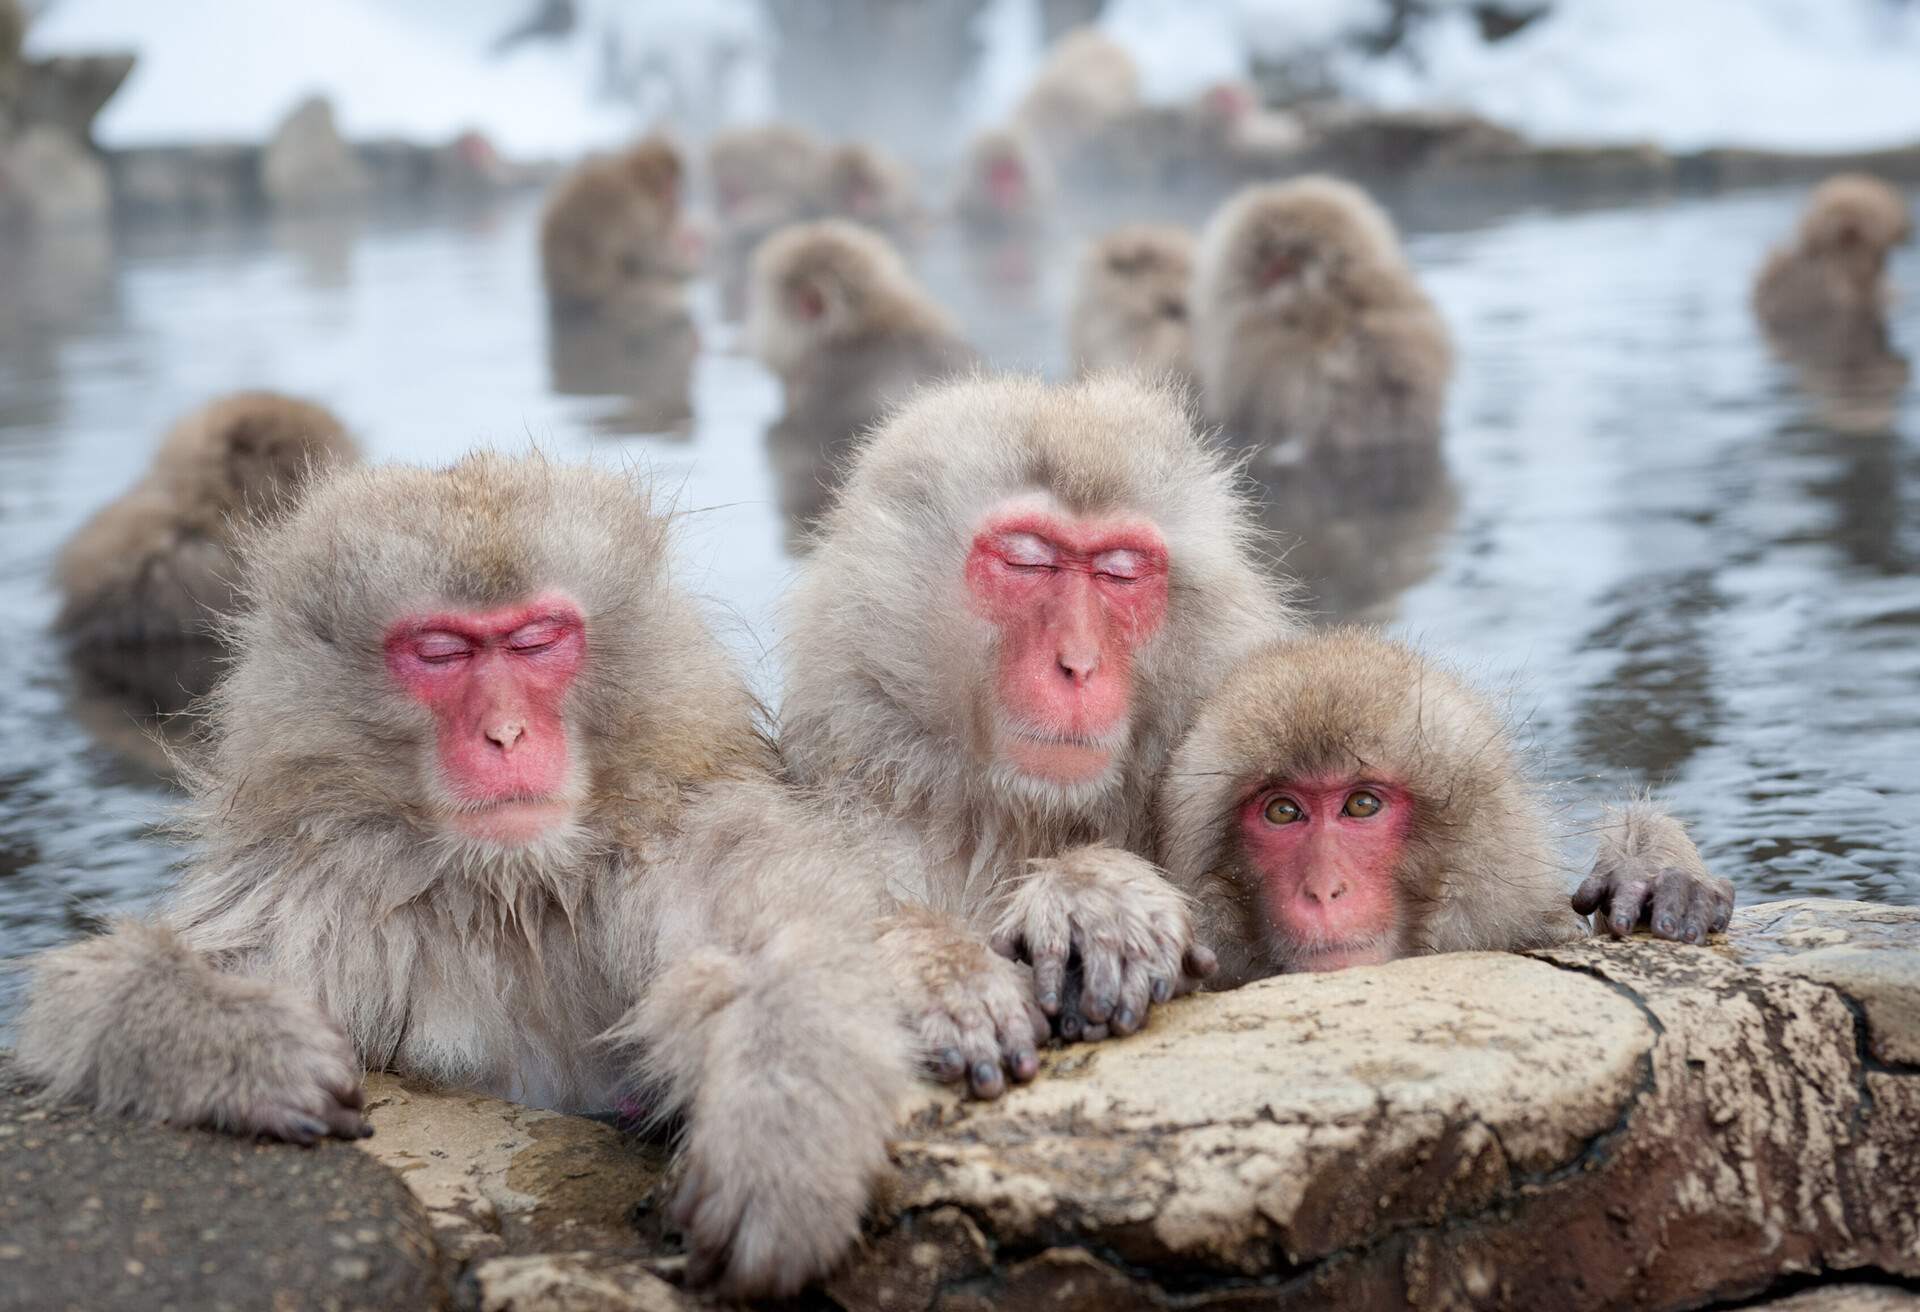 Japanese Macaques of Nagano, Japan